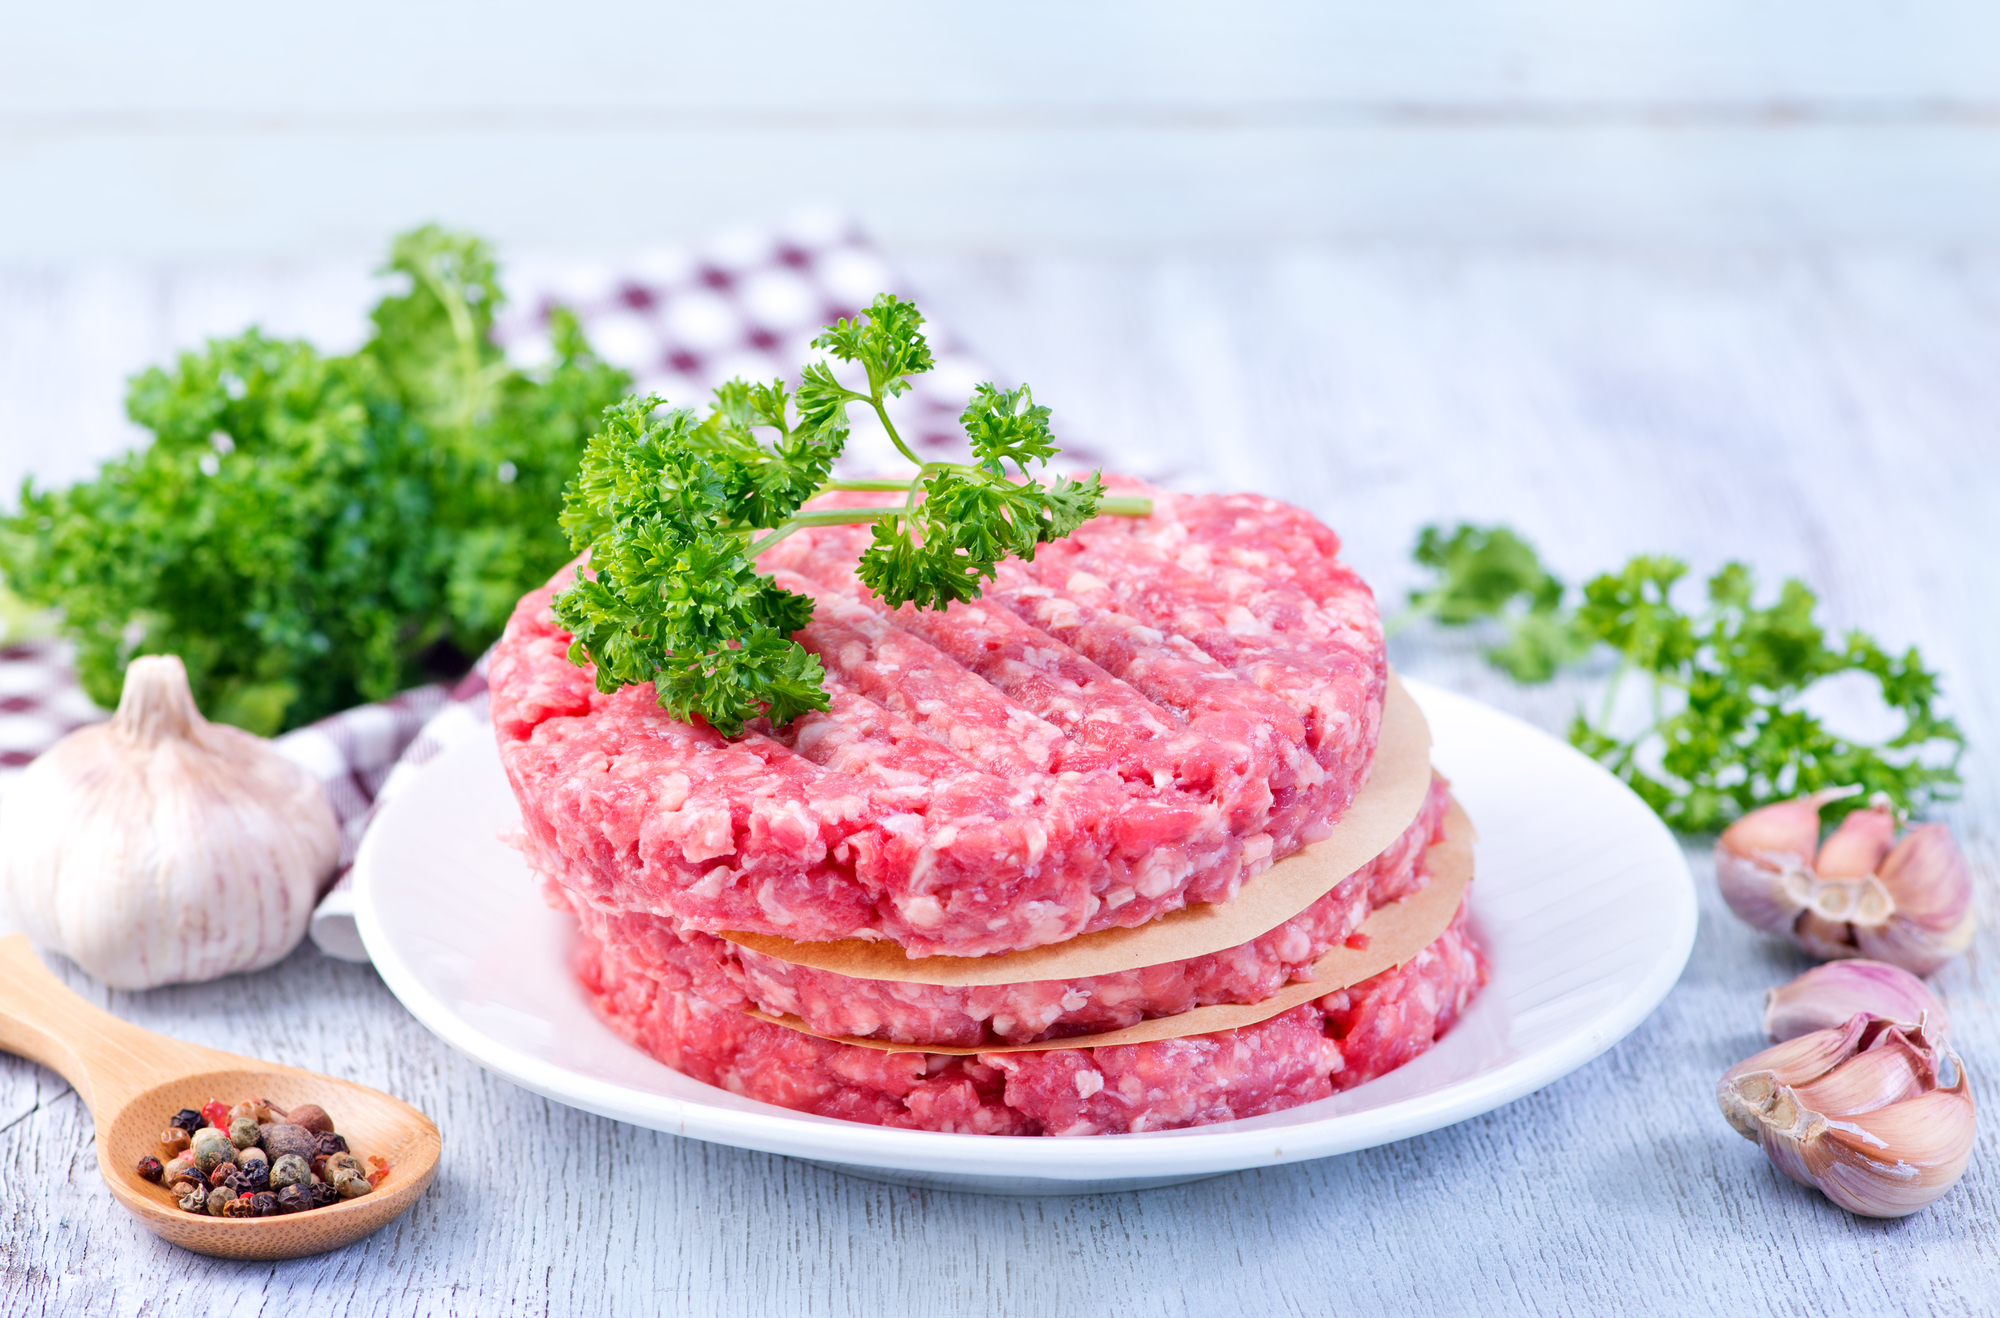 Burger di manzo o maiale crudi impilati con prezzemolo, aglio e pepe; concept: carne cruda